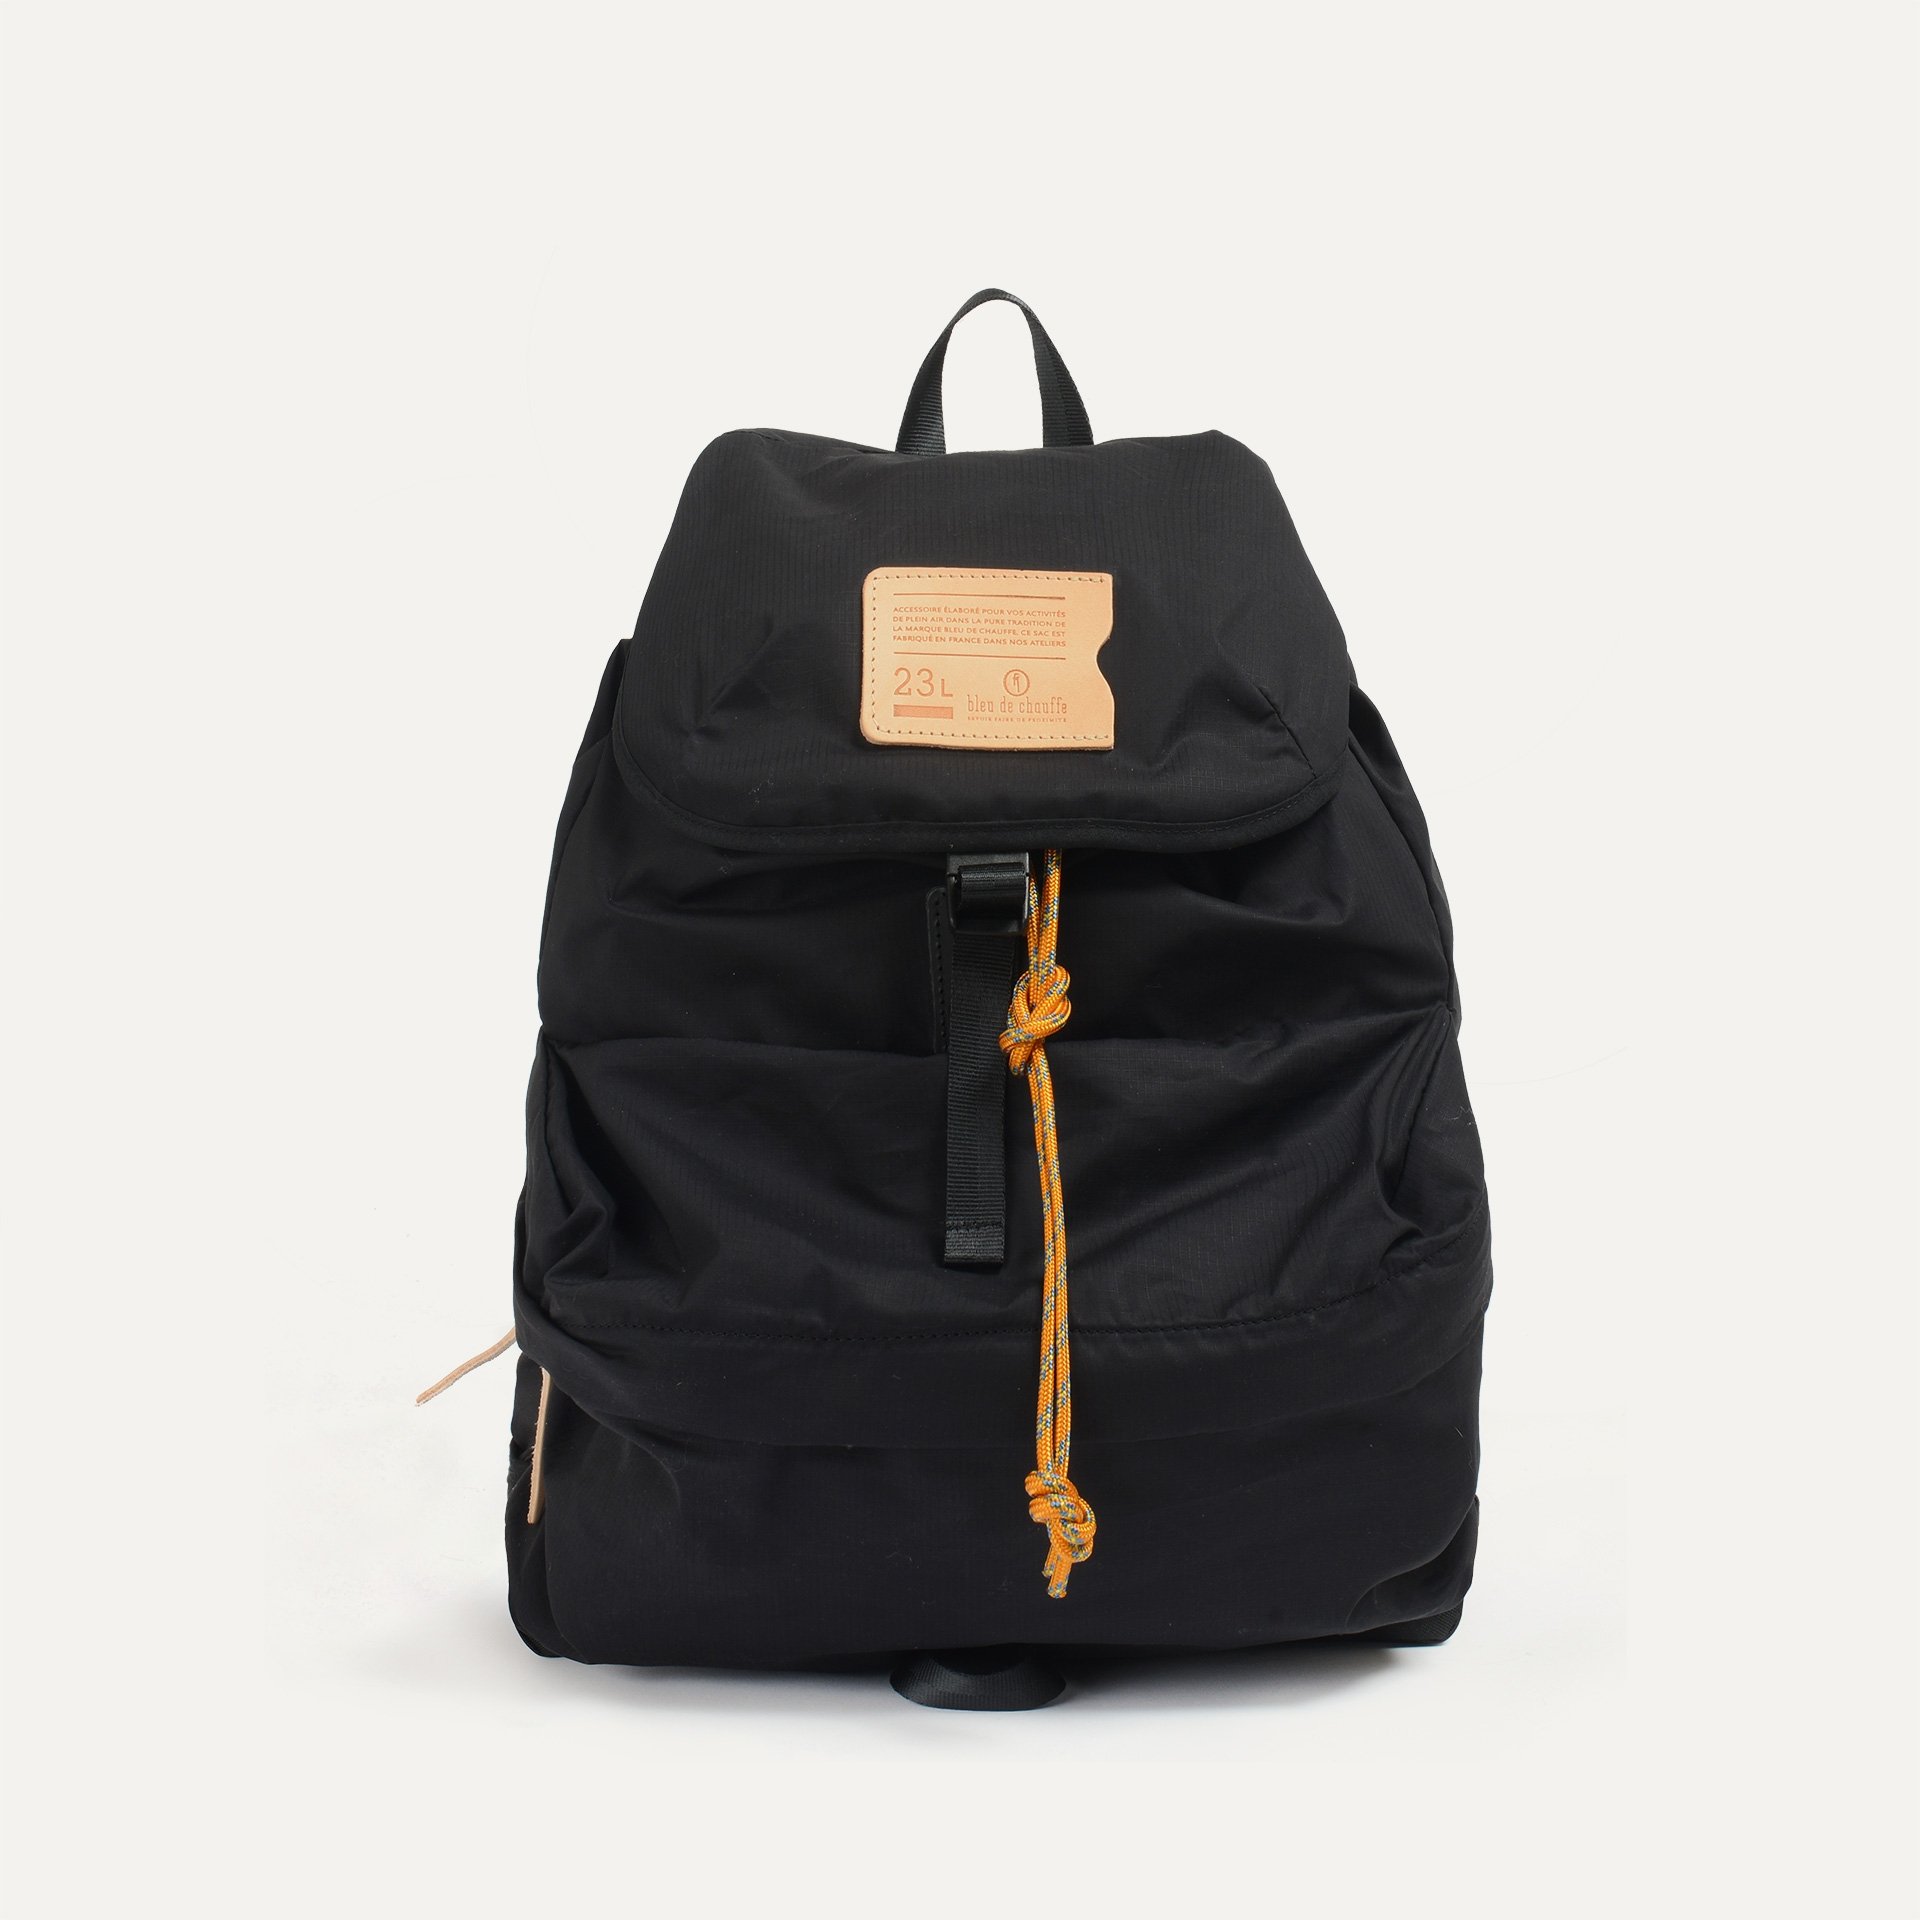 23L Bayou Backpack - Black (image n°2)